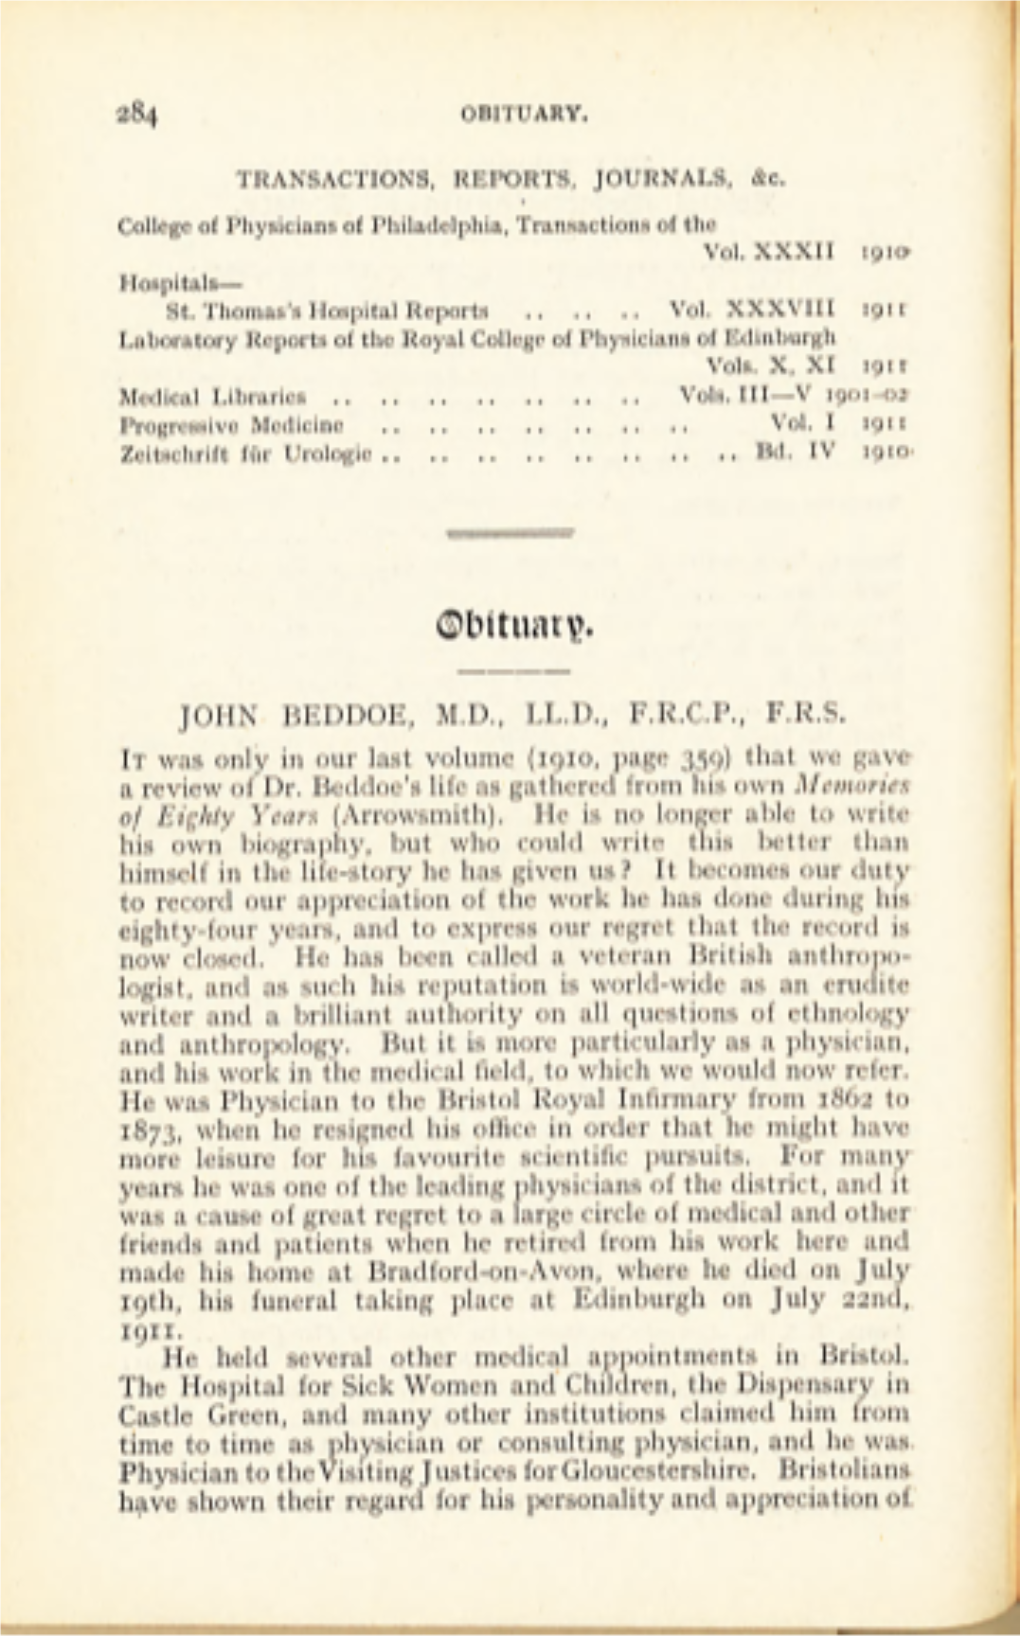 John Beddoe, M.D., Ll.D., F.R.C.P., F.R.S